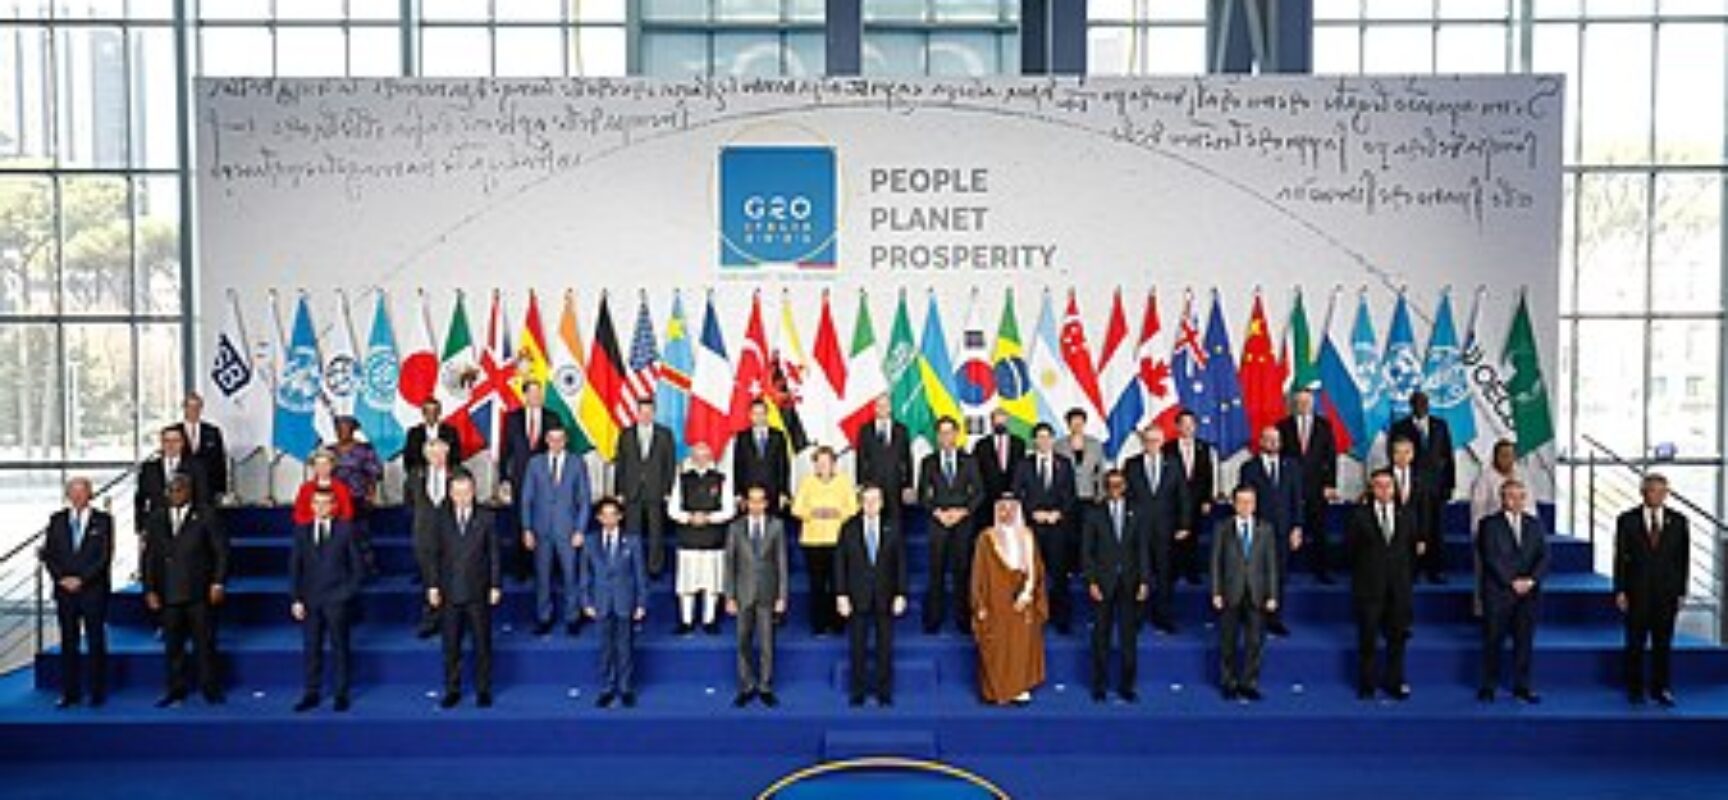 Brasil propõe ao G20 aliança global contra a fome e pobreza